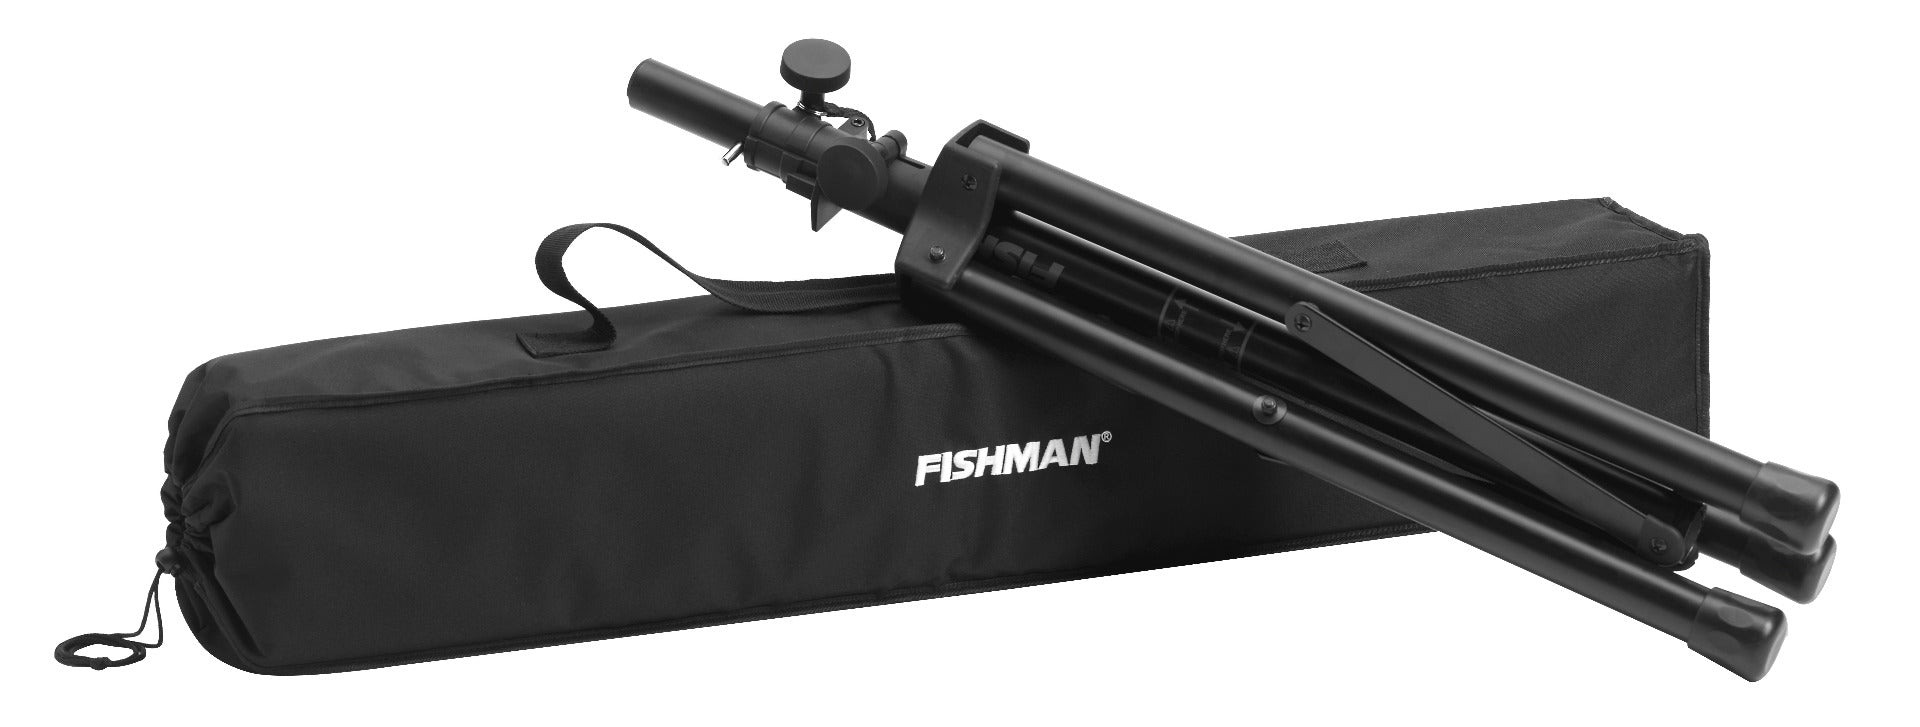 Fishman SA330x